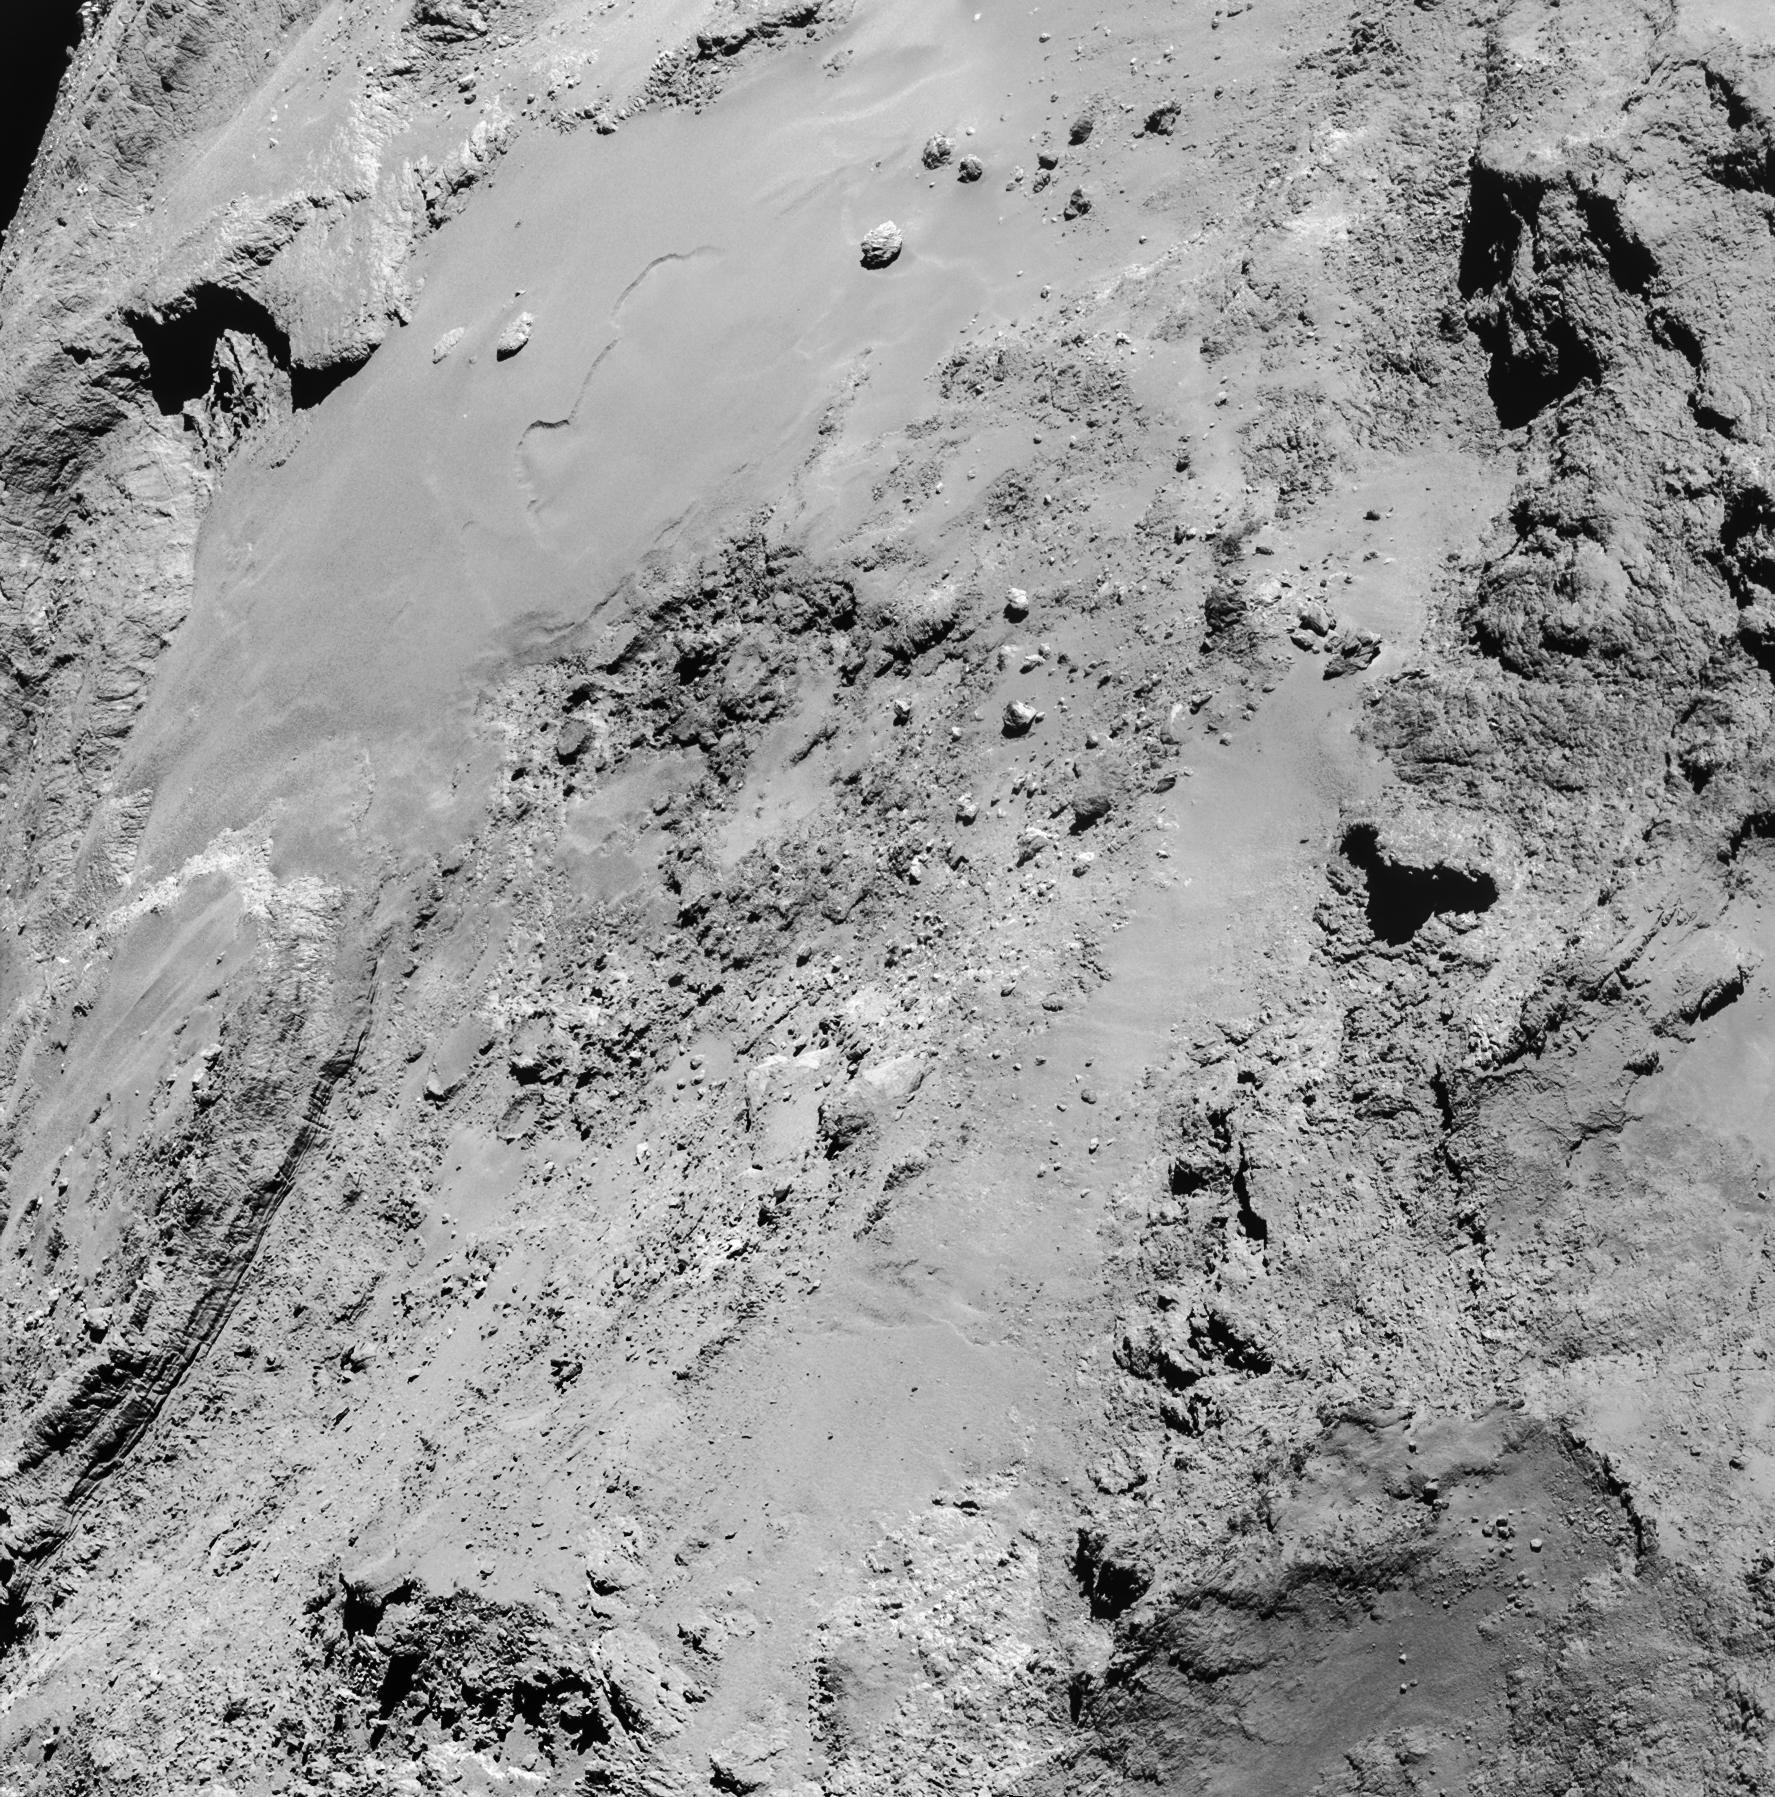 Nahvorbeiflug am Kometen am 14. Februar 2015